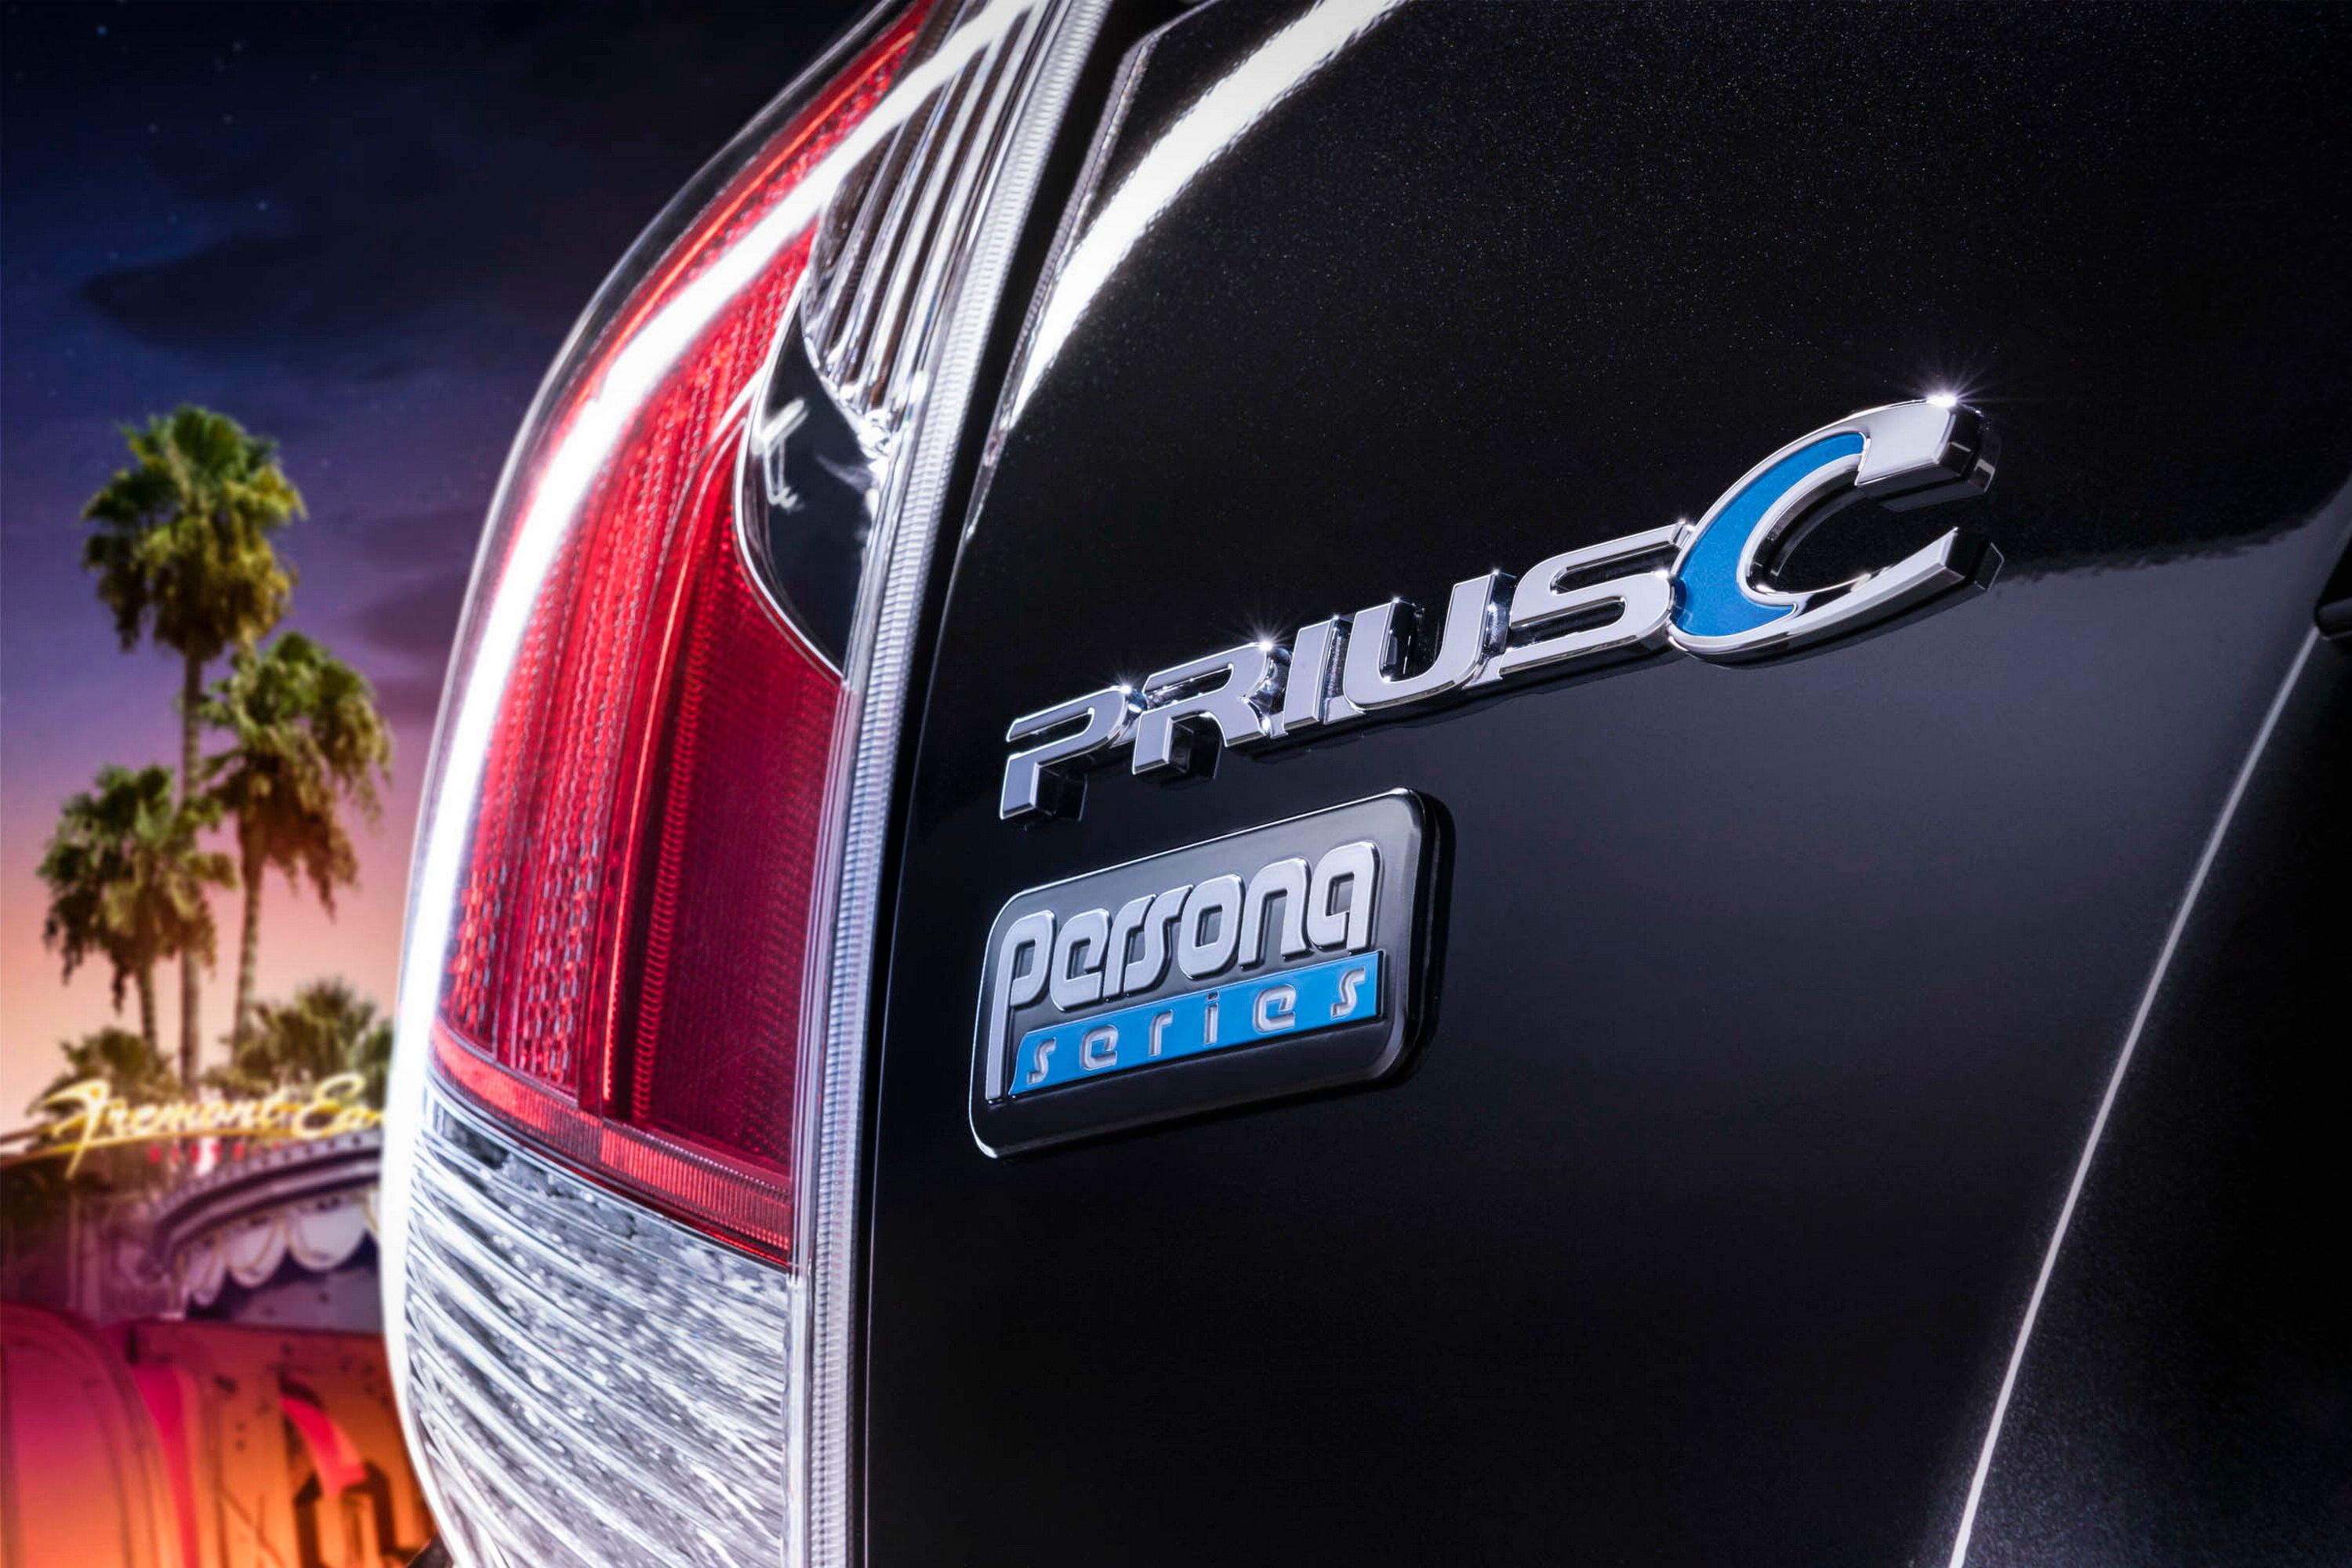 2015 Toyota Prius c